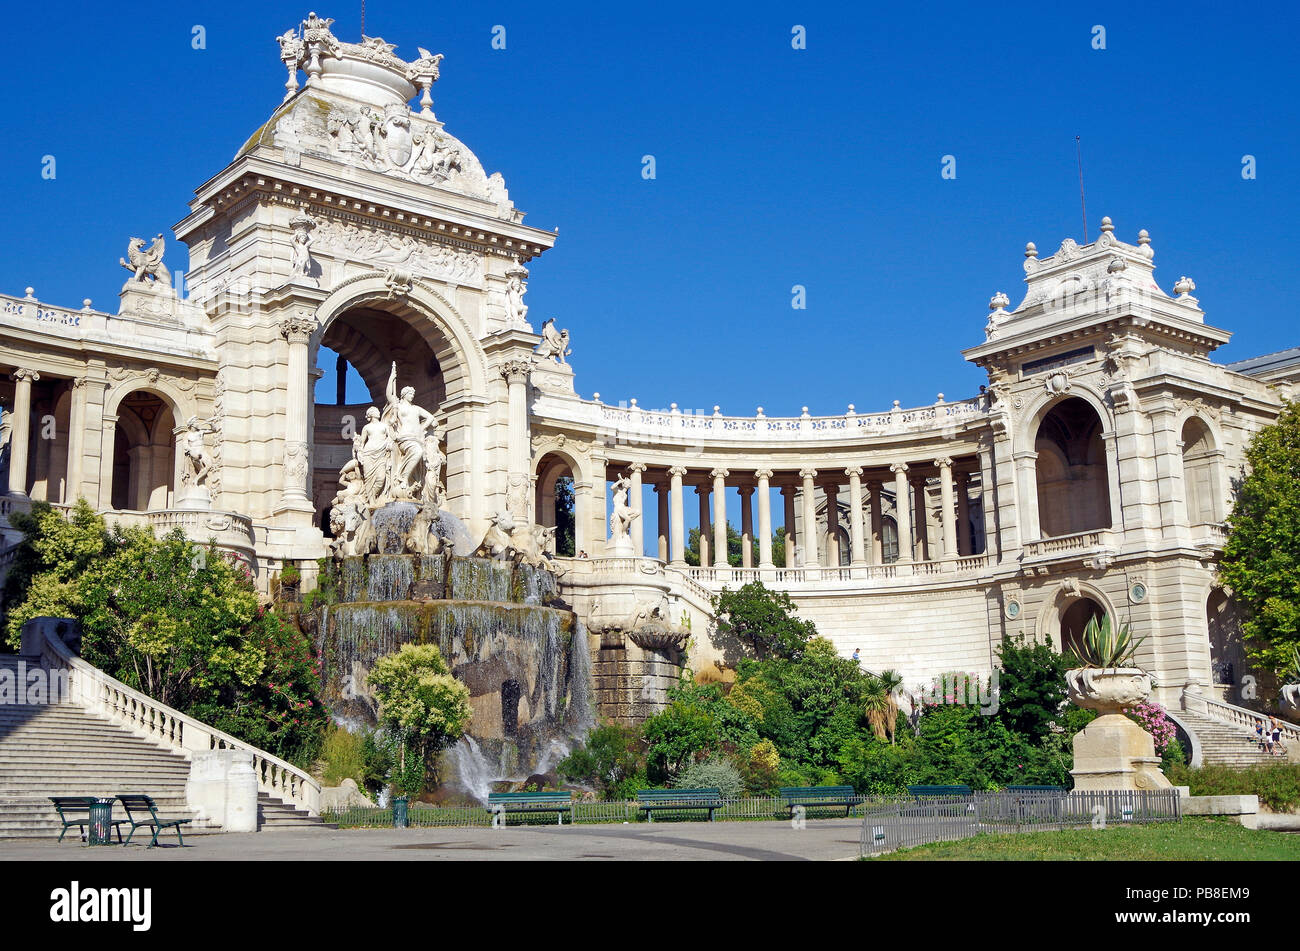 Chateau d'eau & colonnato del favoloso palazzo Longchamp a Marsiglia, Francia, comprendente 2 musei, castello d'acqua, colonnati, fontane e sculture Foto Stock